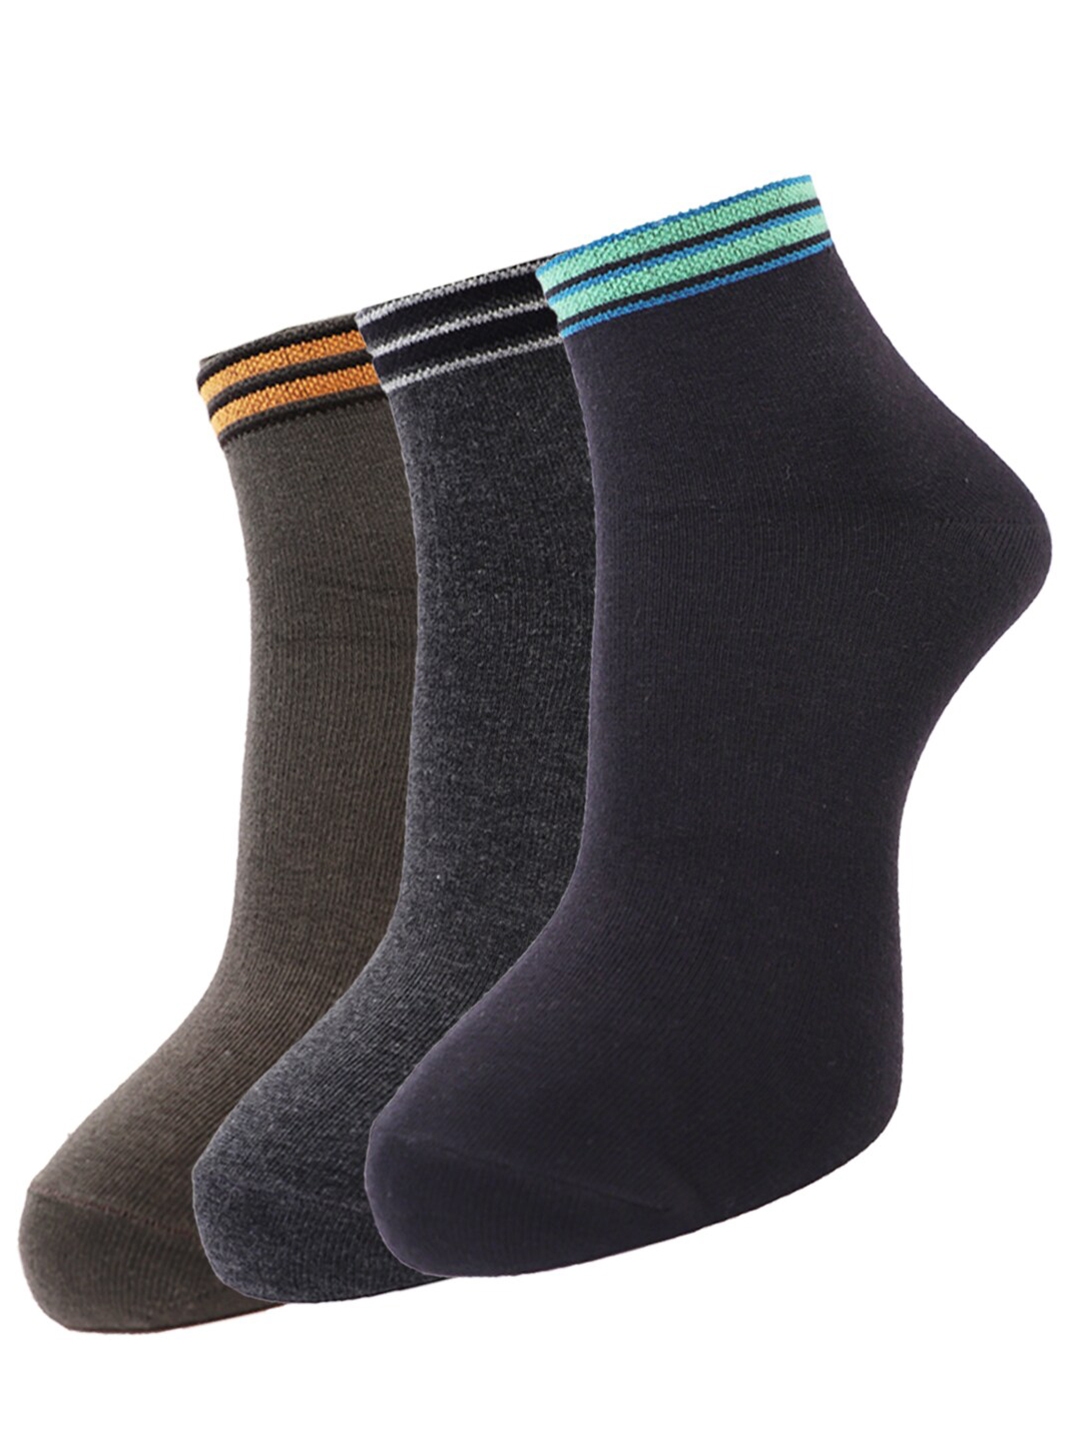 Buy Dollar Socks Men Pack Of 3 Assorted Cotton Ankle Length Socks ...